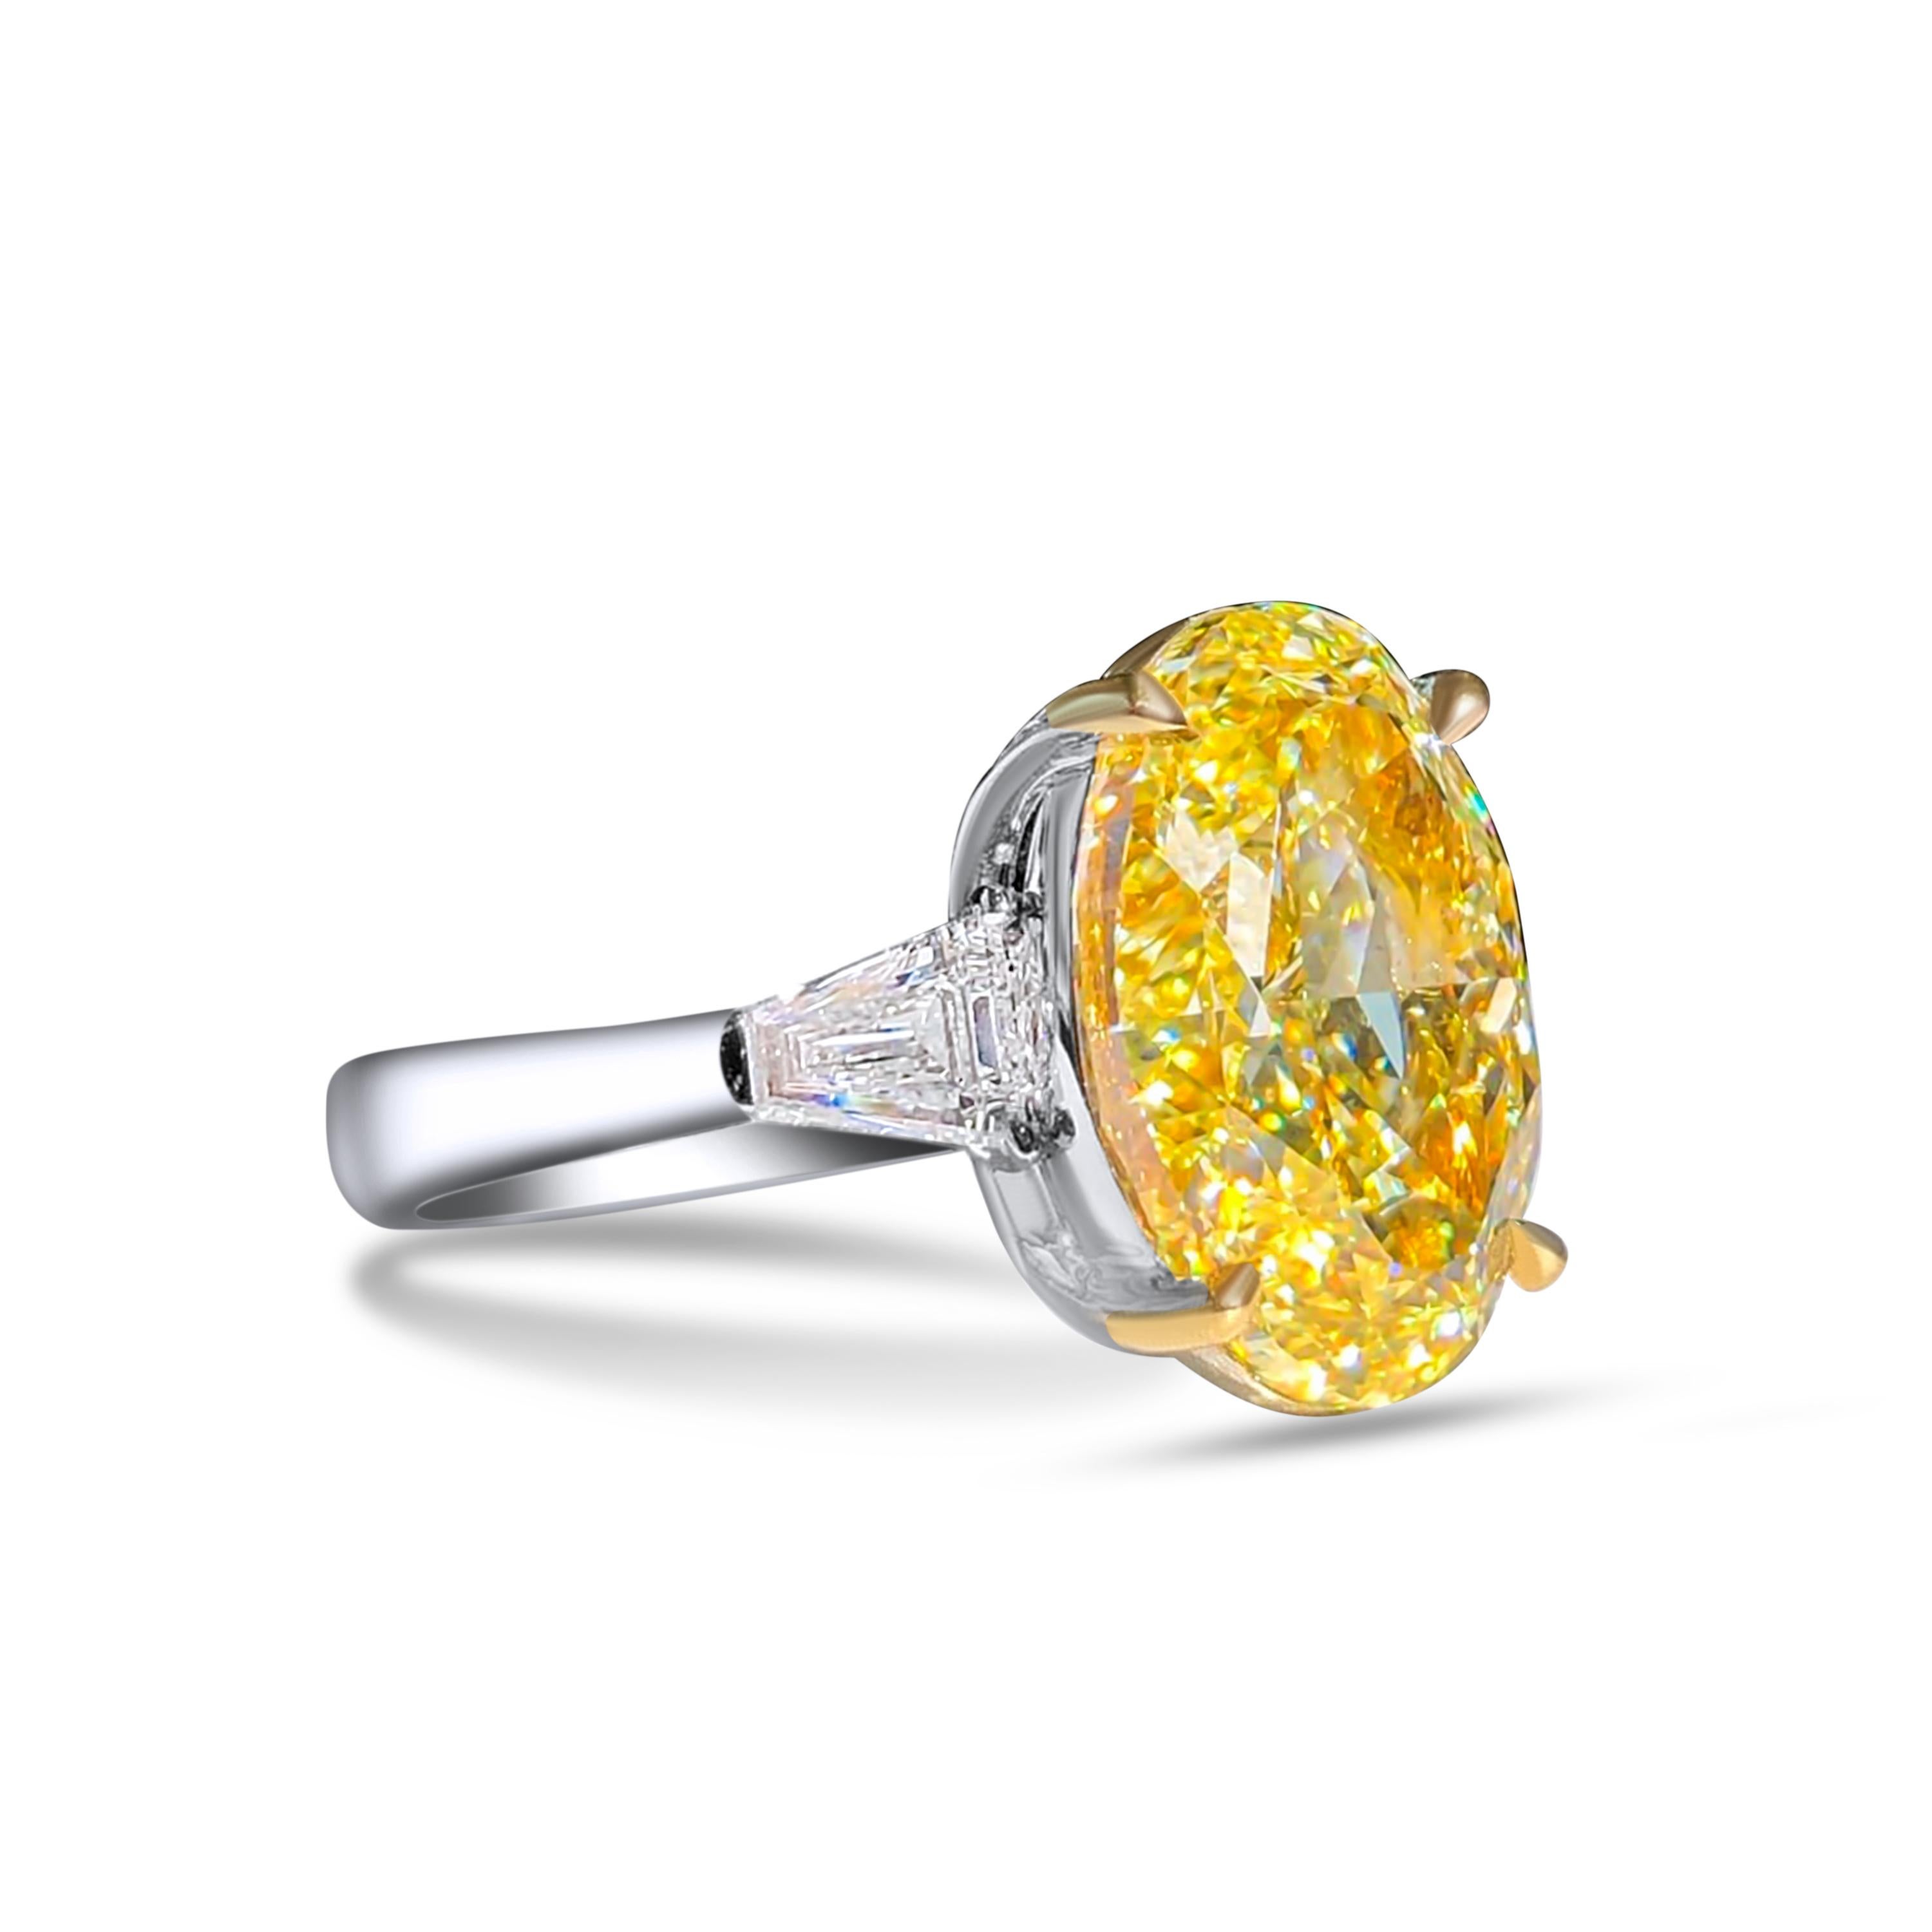 Nous vous invitons à découvrir cette élégante et majestueuse bague de fiançailles sertie d'un diamant ovale de 10 carats certifié GIA Fancy Yellow, rehaussé de deux diamants baguettes incolores. 

Nouvel anneau 
Diamant principal : Fancy Yellow